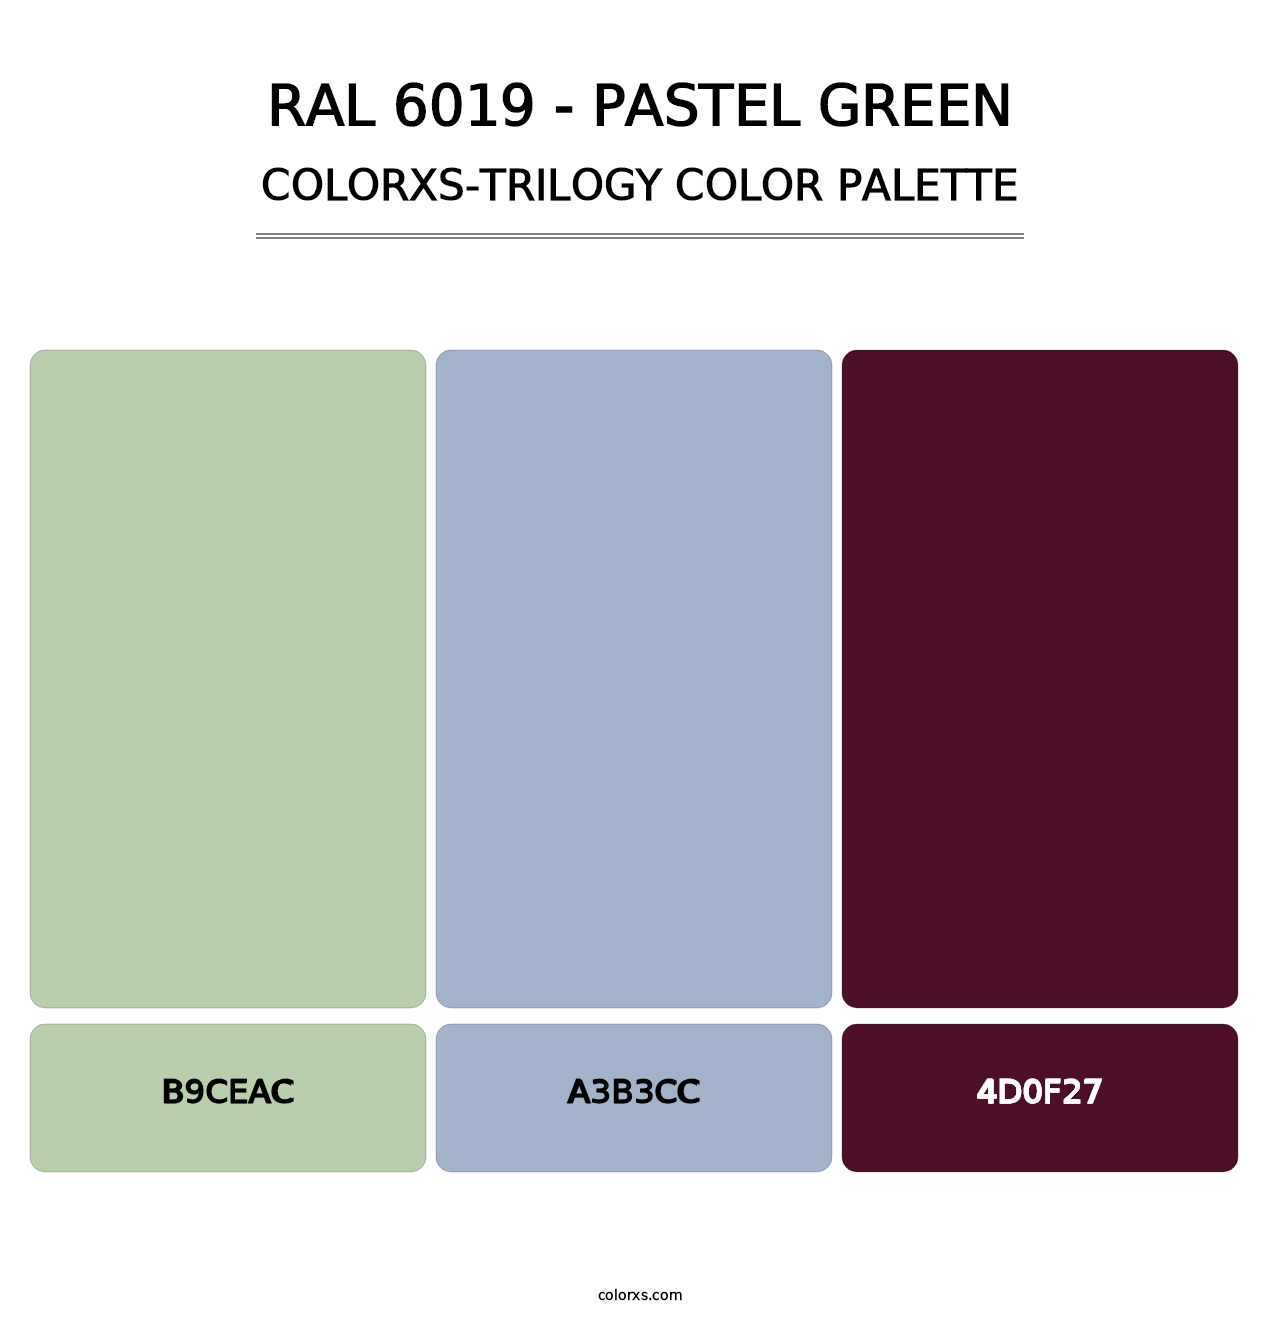 RAL 6019 - Pastel Green - Colorxs Trilogy Palette